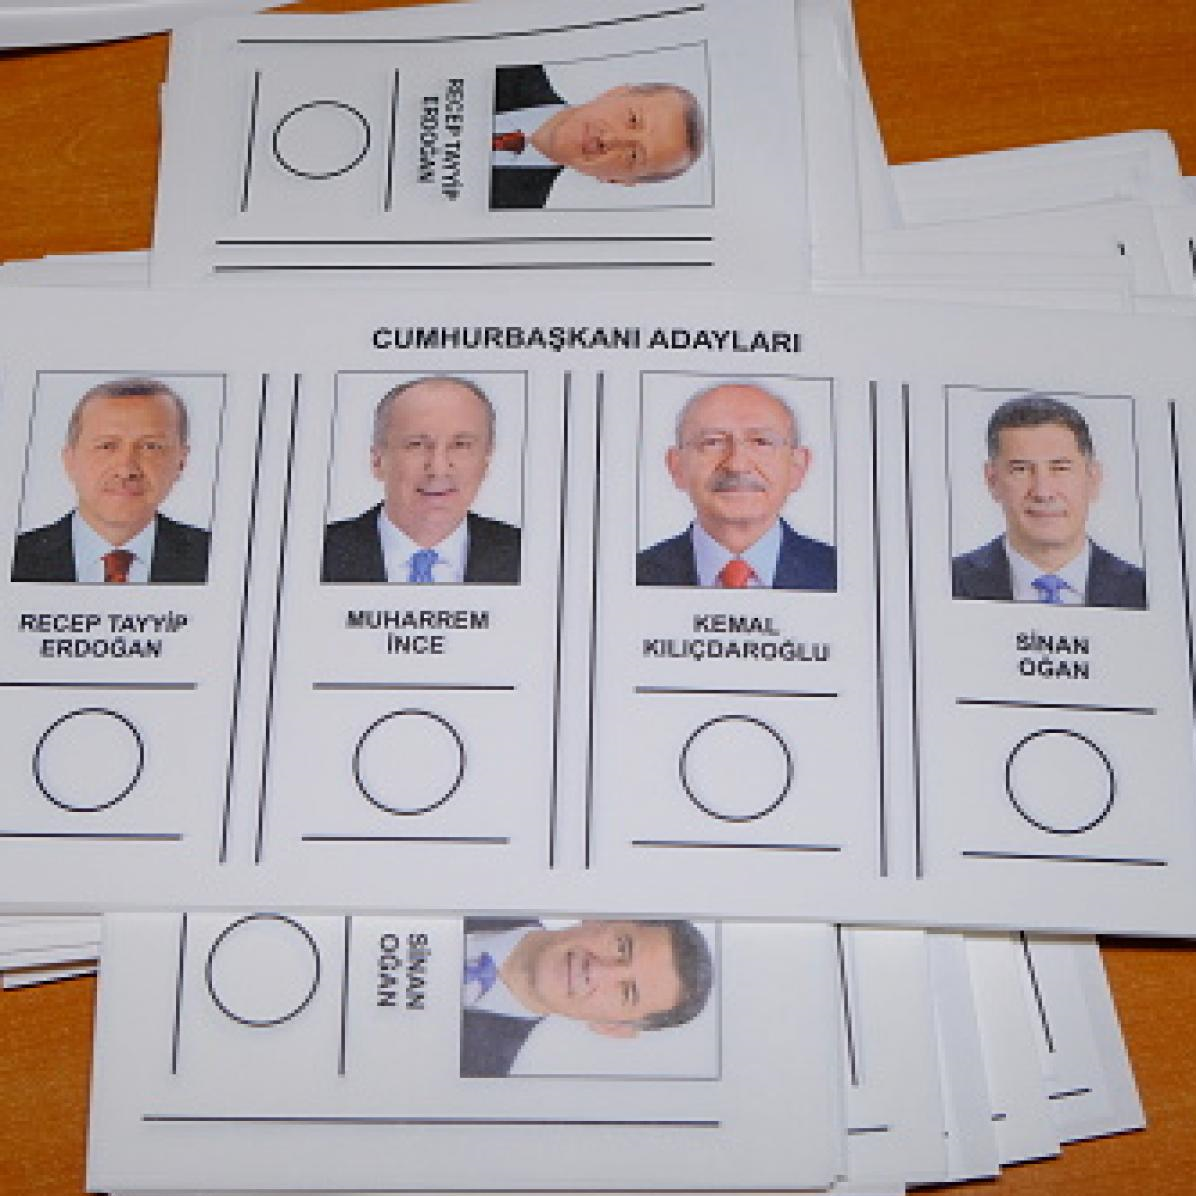 همه آنچه که باید درباره انتخابات ترکیه بدانید